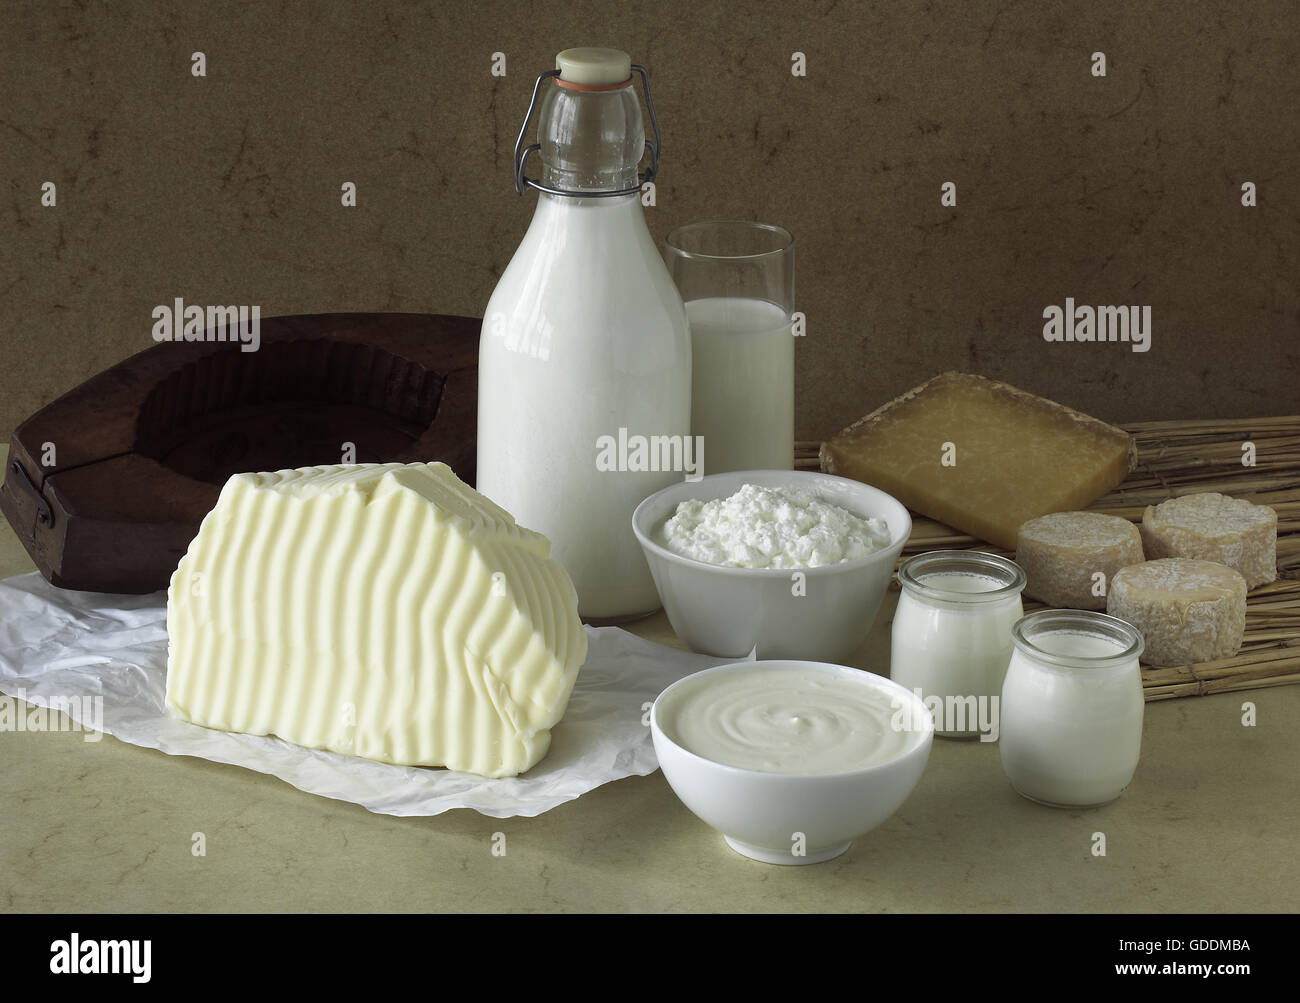 Les produits laitiers, le beurre, le lait, la crème fraîche, fromage, yogourt et fromage de chèvre et Cantal Banque D'Images